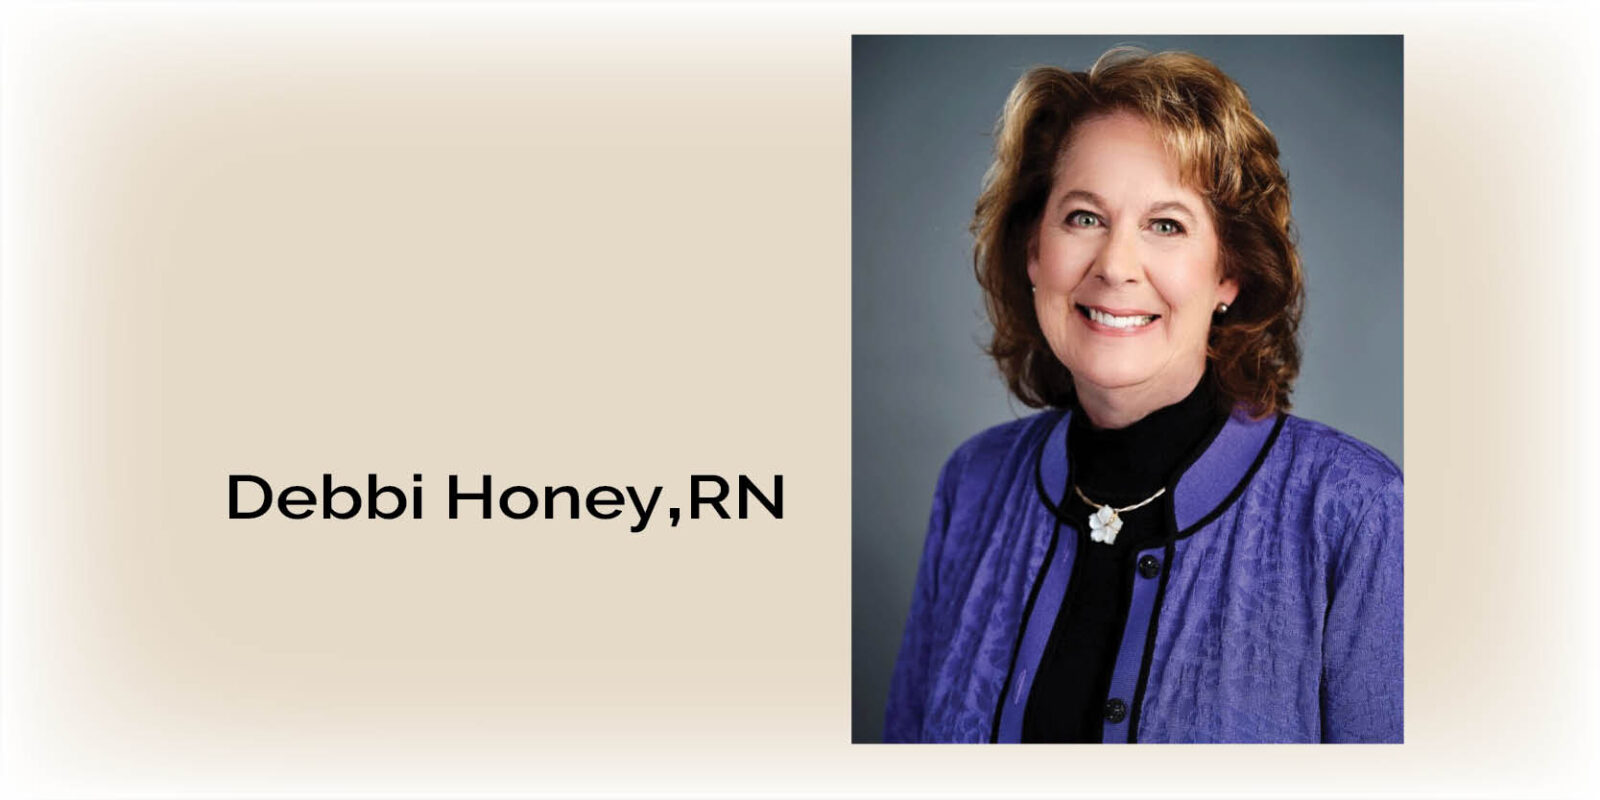 Debbi Honey of Covenant Health är erkänd som patientsäkerhetsexpert